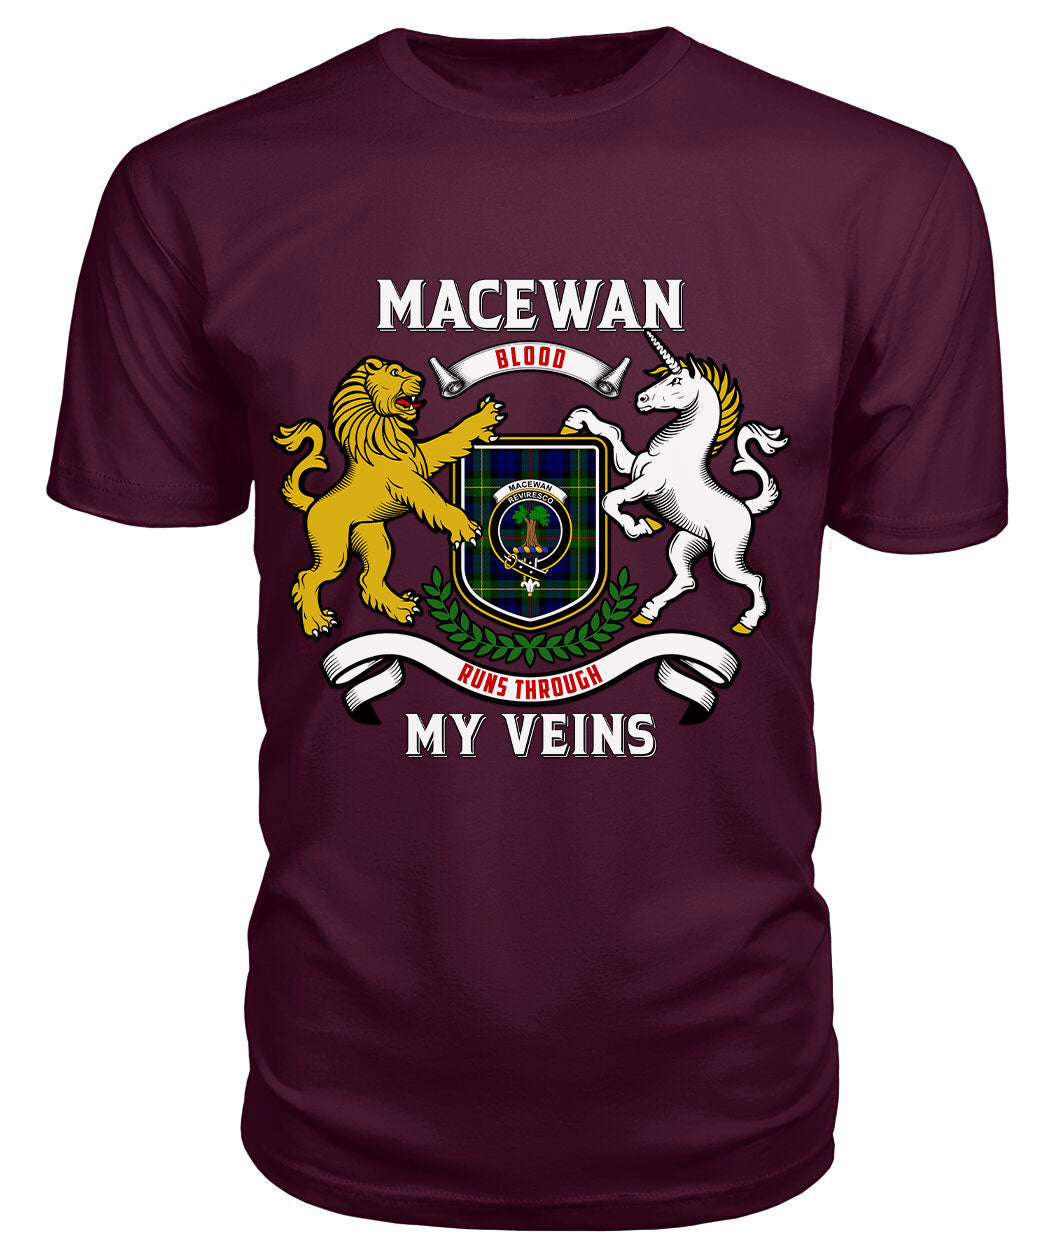 MacEwan Modern Tartan Crest 2D T-shirt - Blood Runs Through My Veins Style